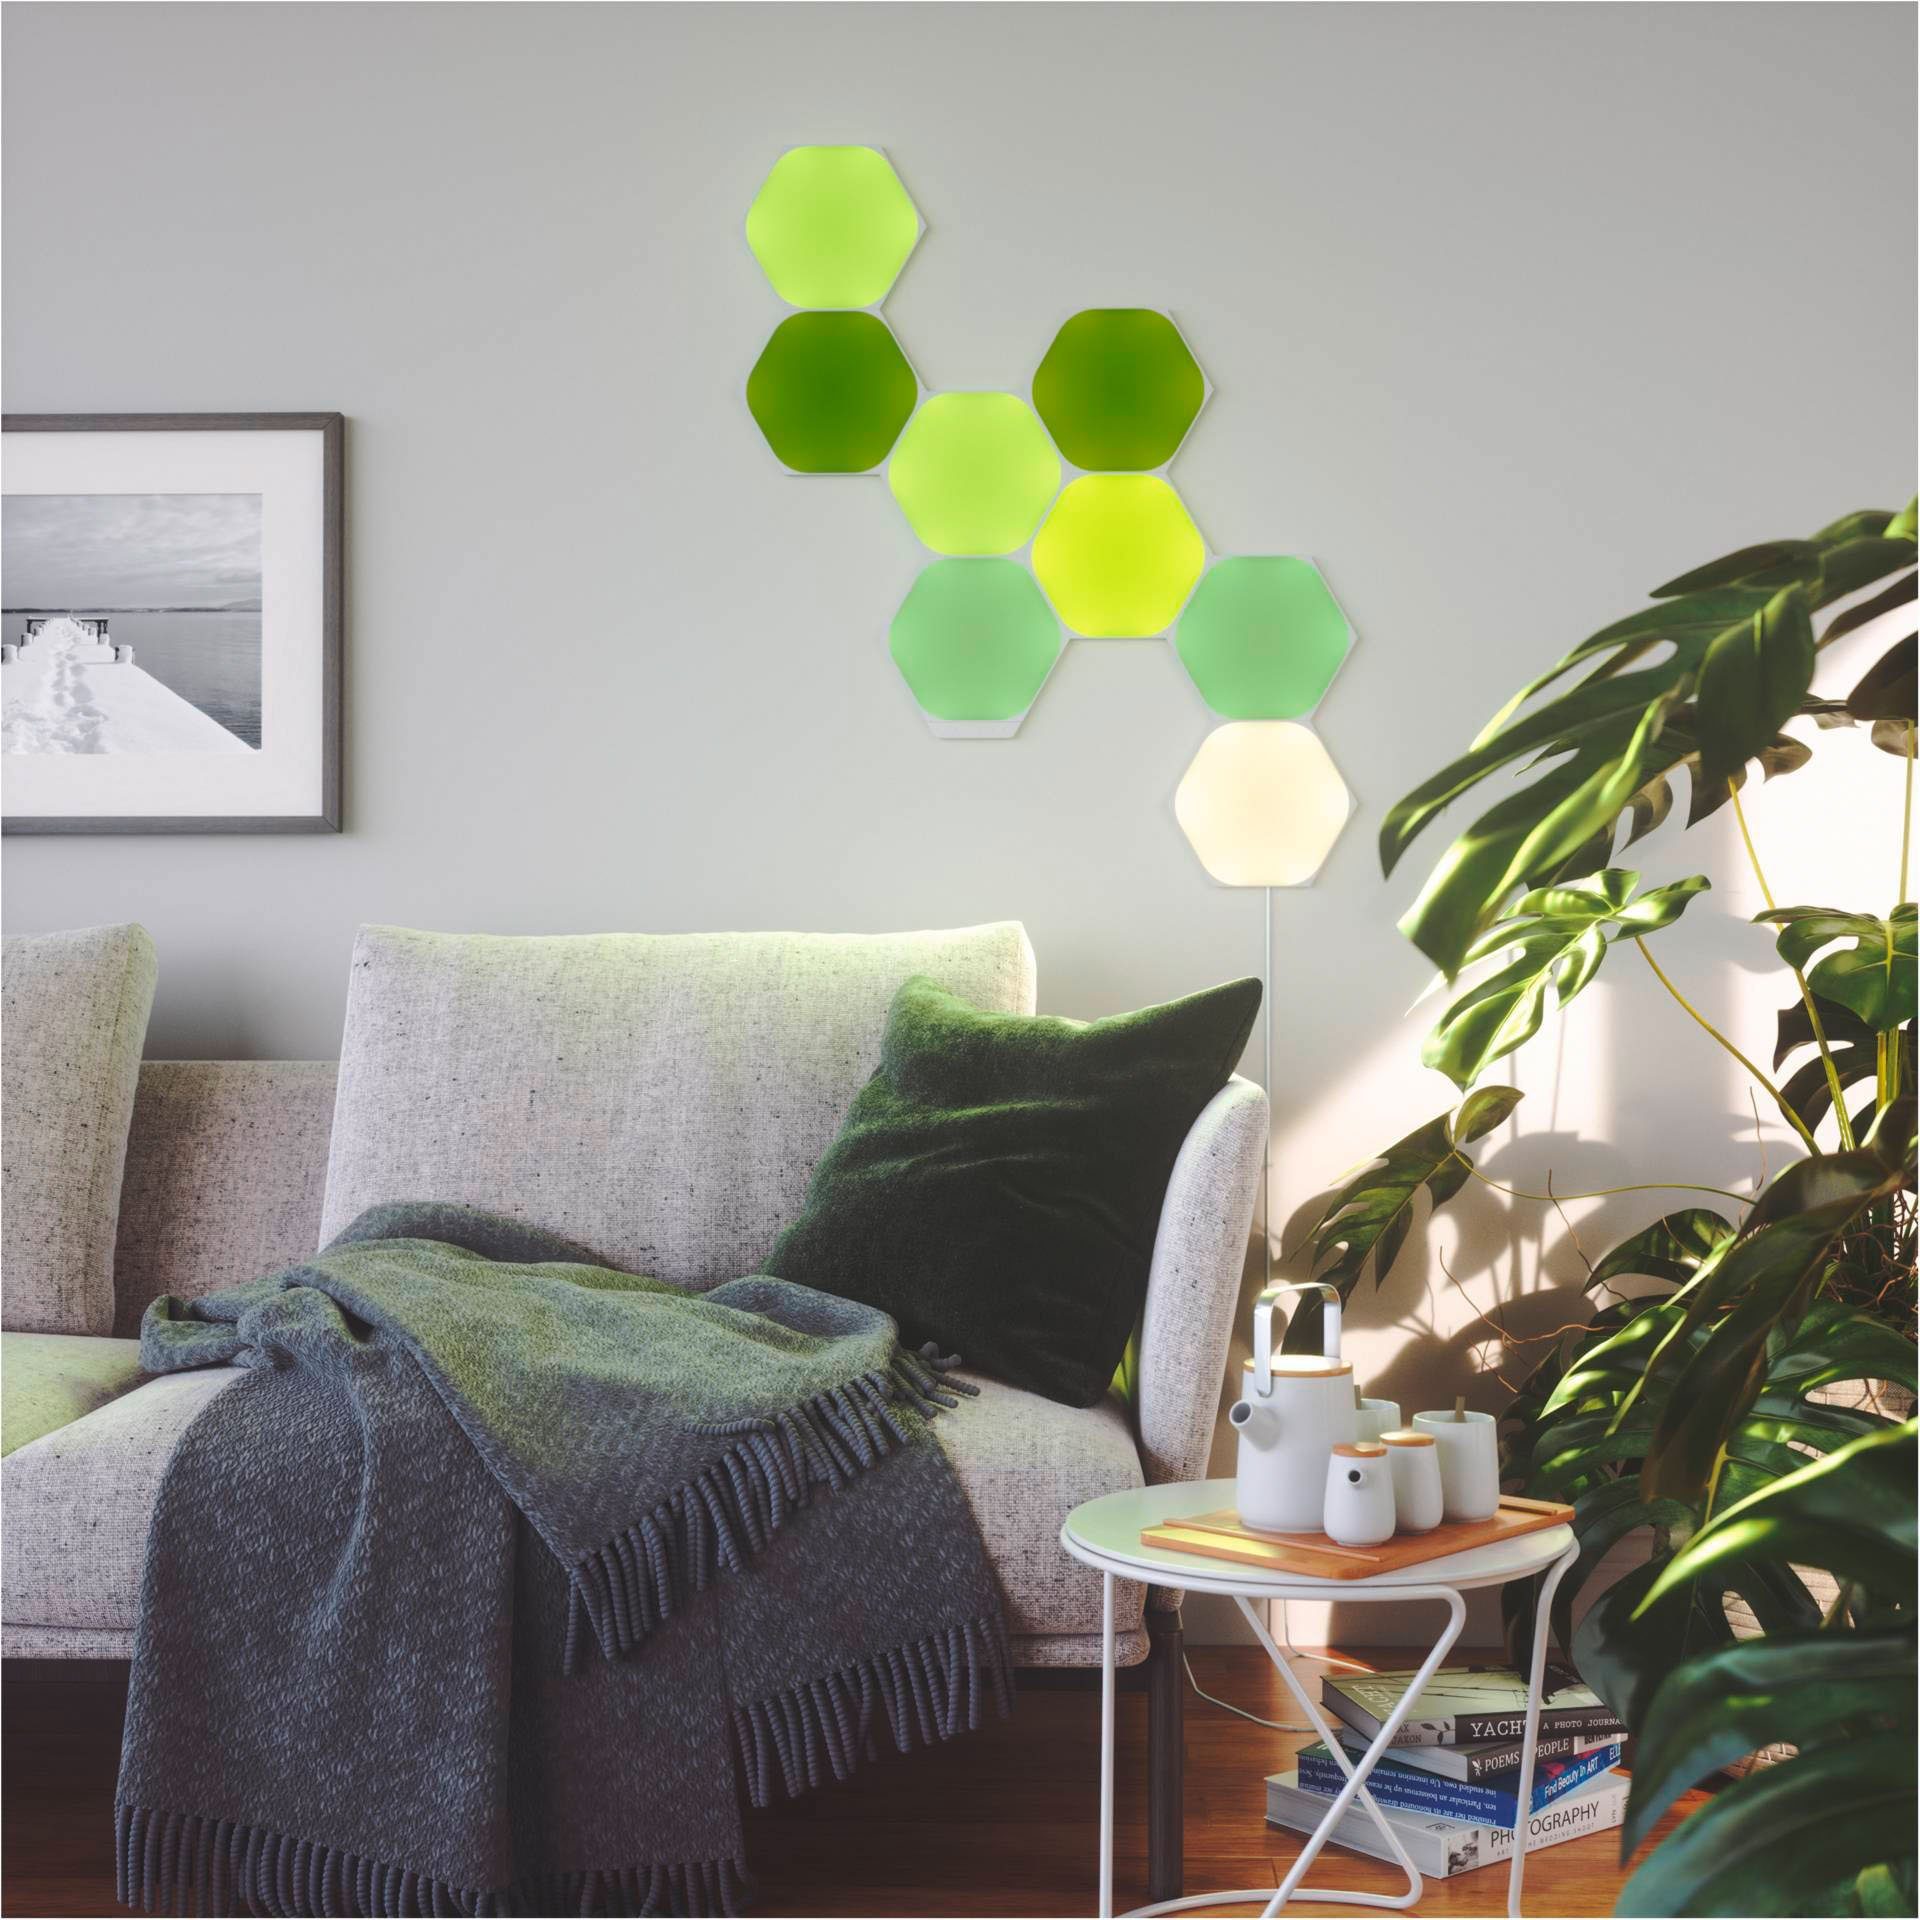 fest integriert, nanoleaf Farbwechsler LED Dimmfunktion, LED Hexagons, Panel